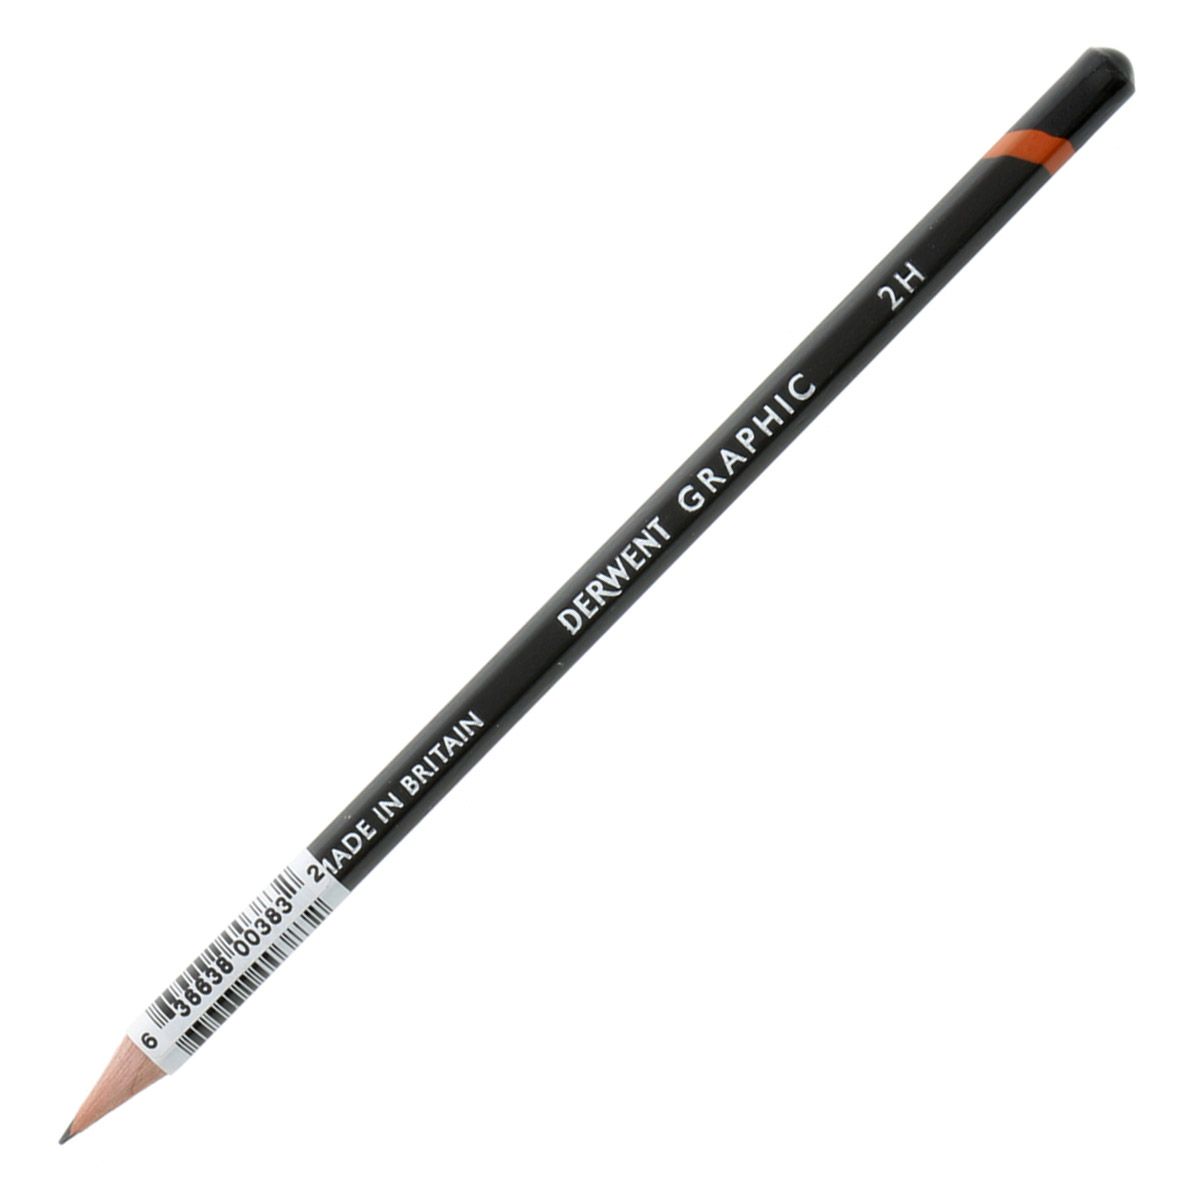 Derwent Graphic Pencil - 2H